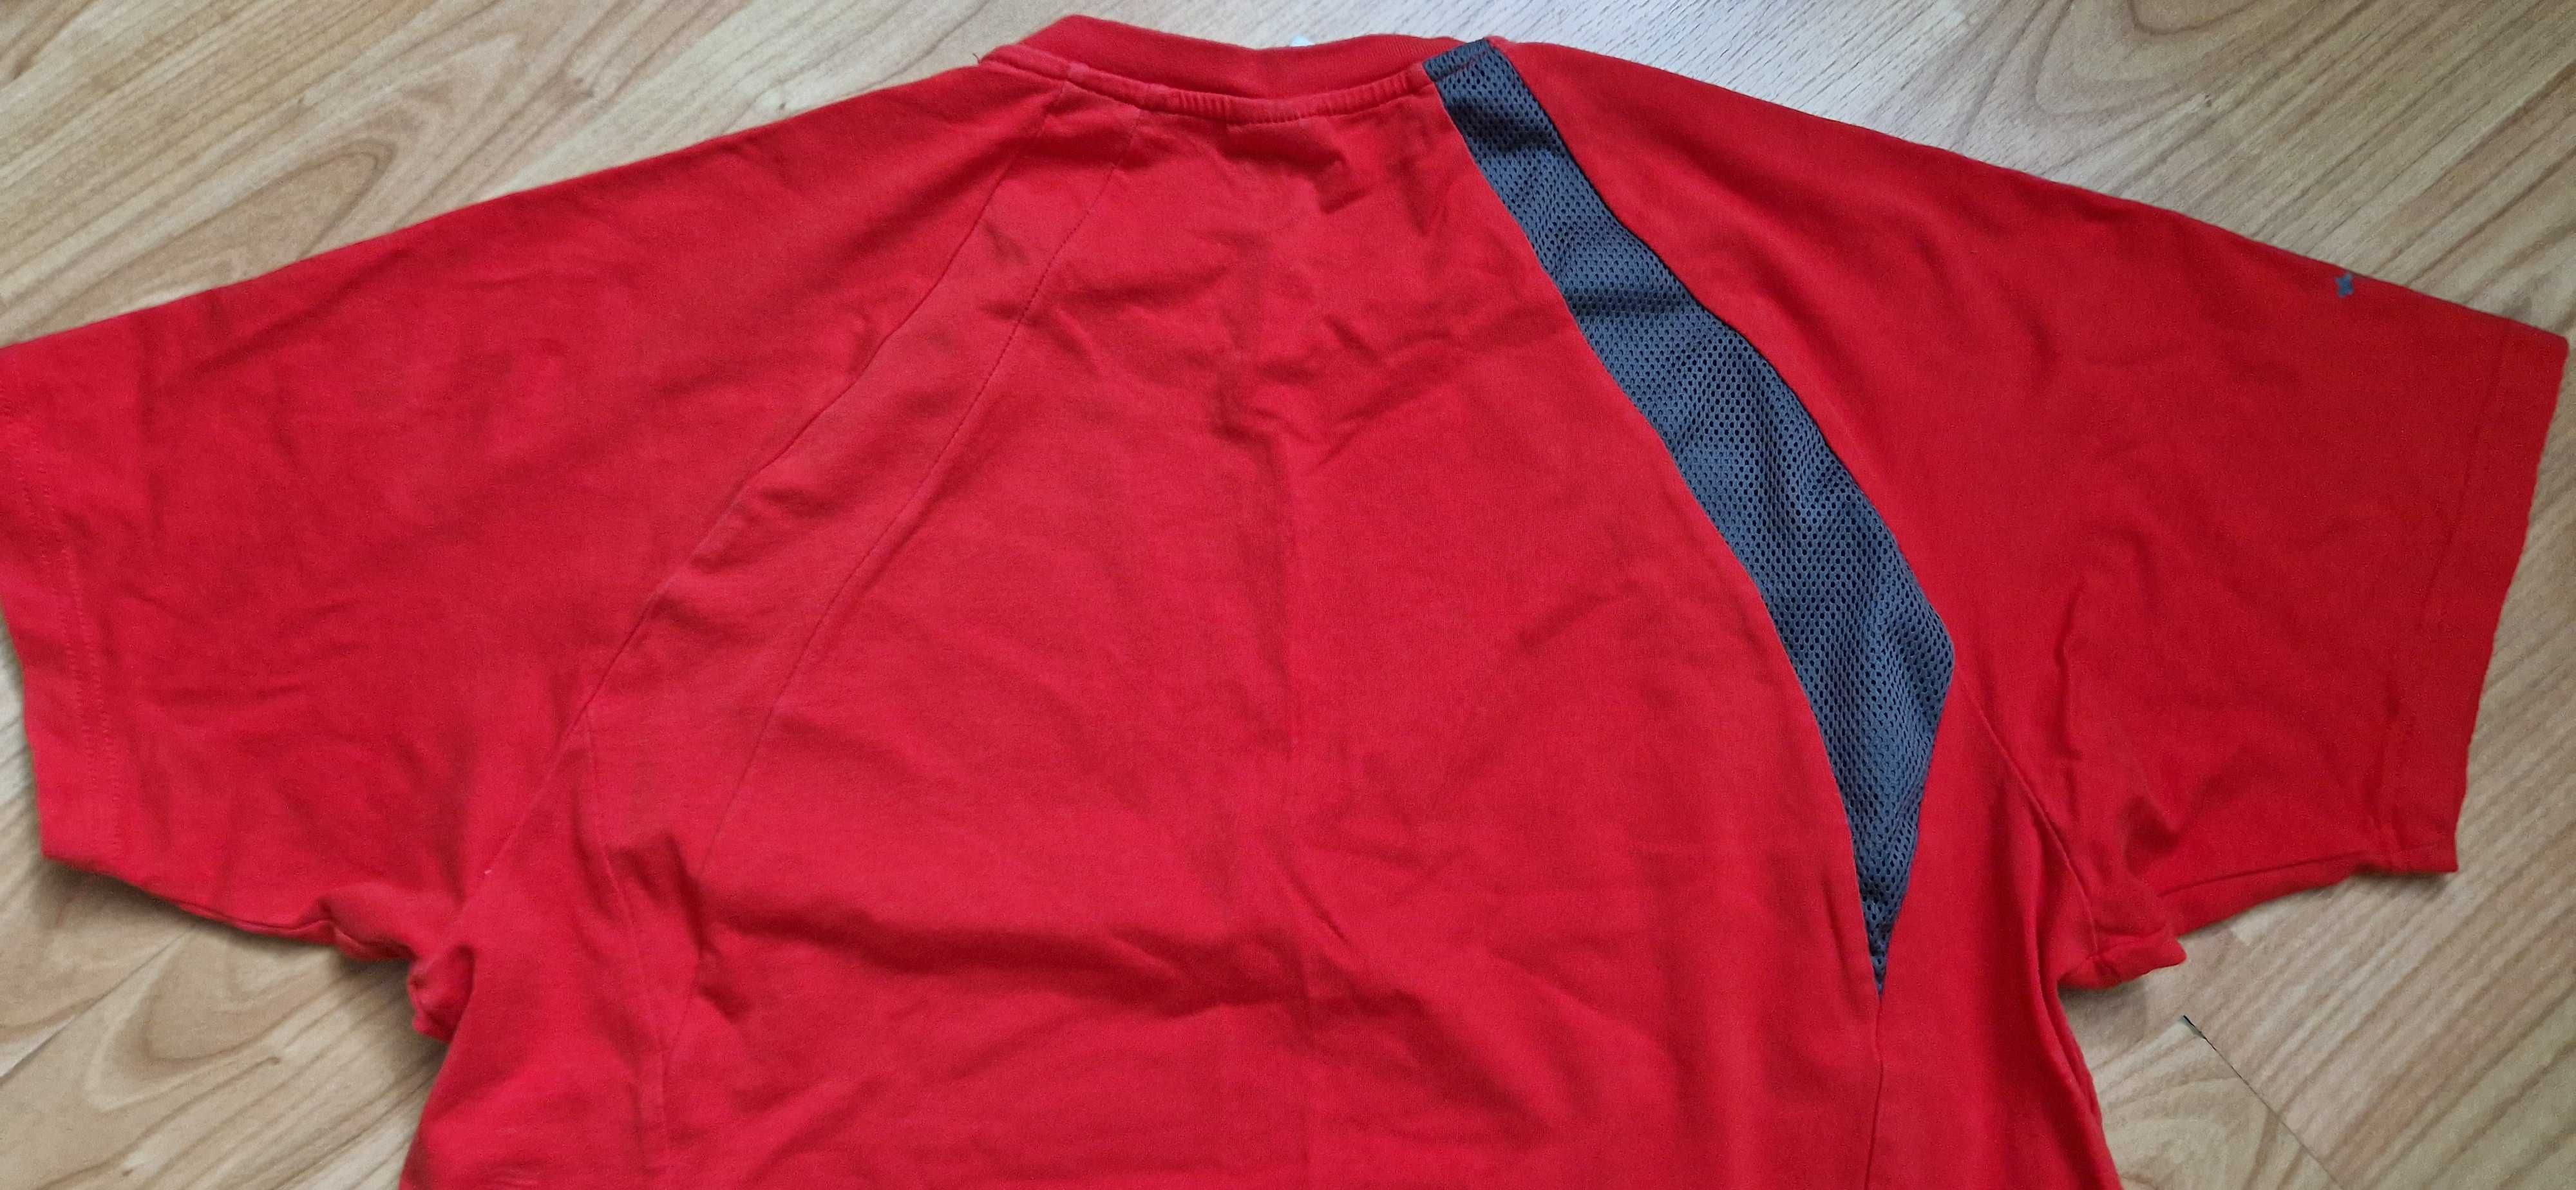 Czerwona koszulka męska Adidas climalite M